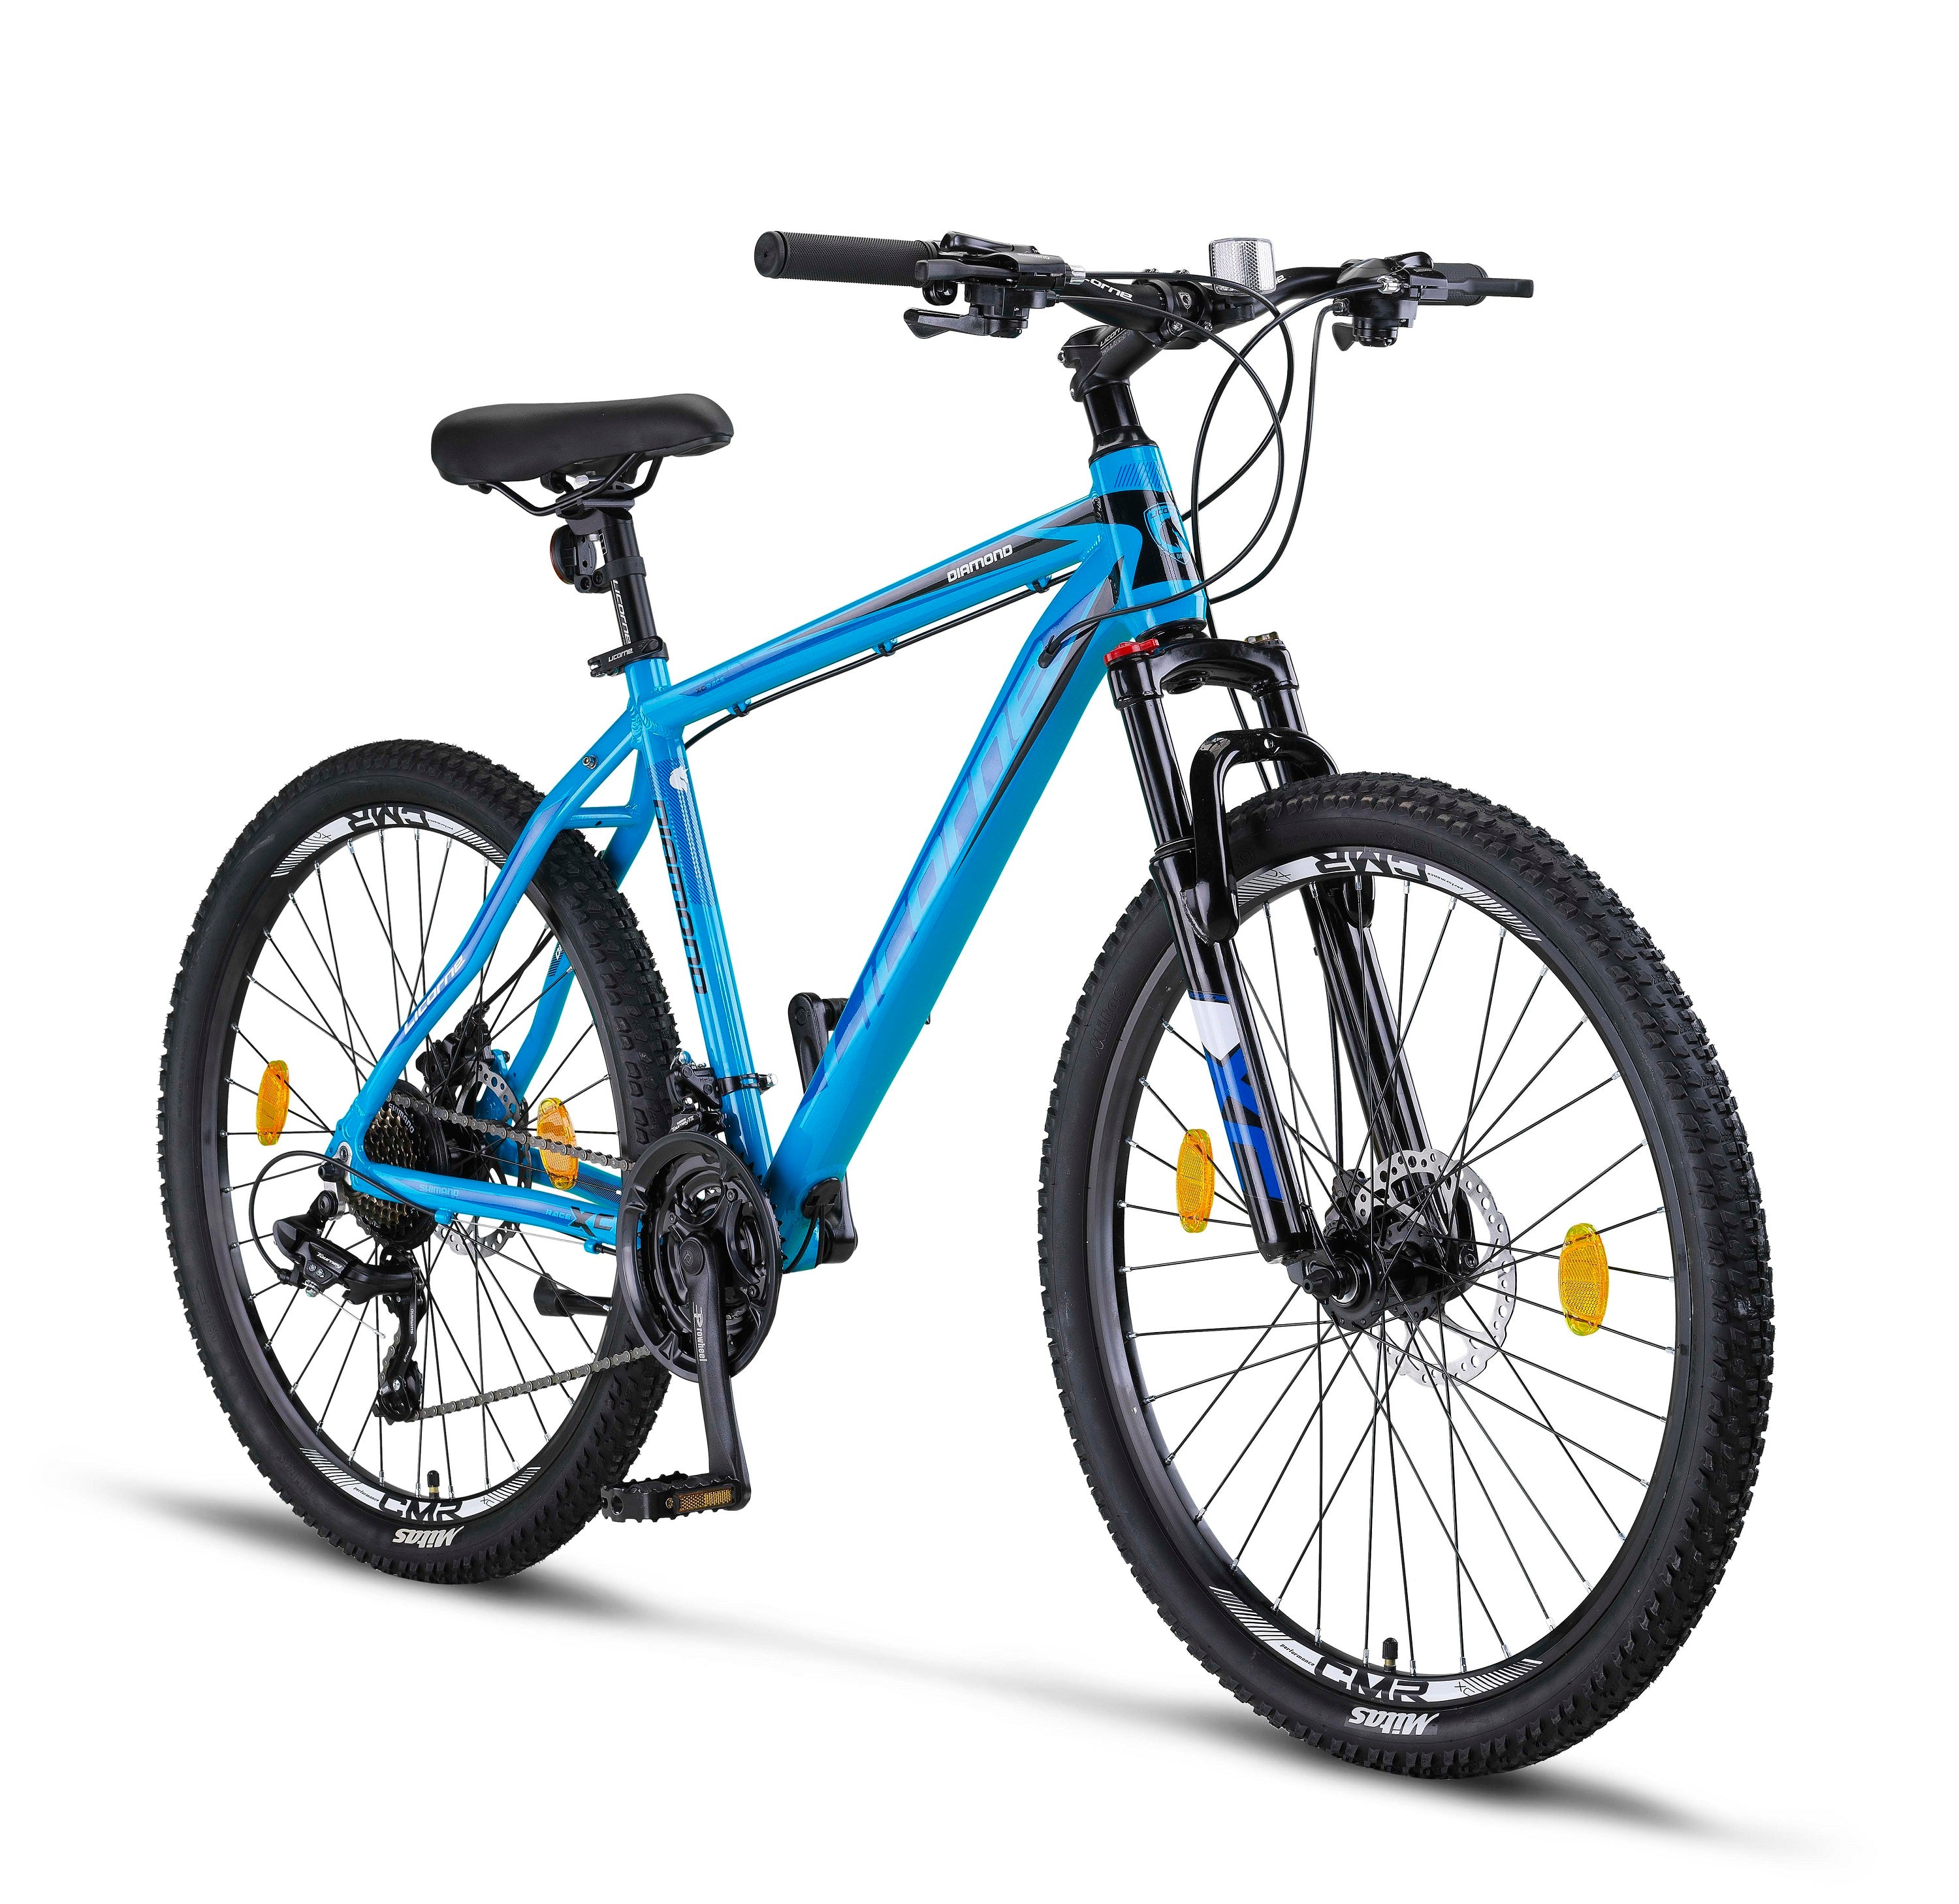 Licorne Bike Diamond mountain bike premium in alluminio, bici per ragazzi, ragazze, uomini e donne - cambio a 21 velocità - freno a disco da uomo, forcella anteriore regolabile da 26, 27,5 e 29 pollici